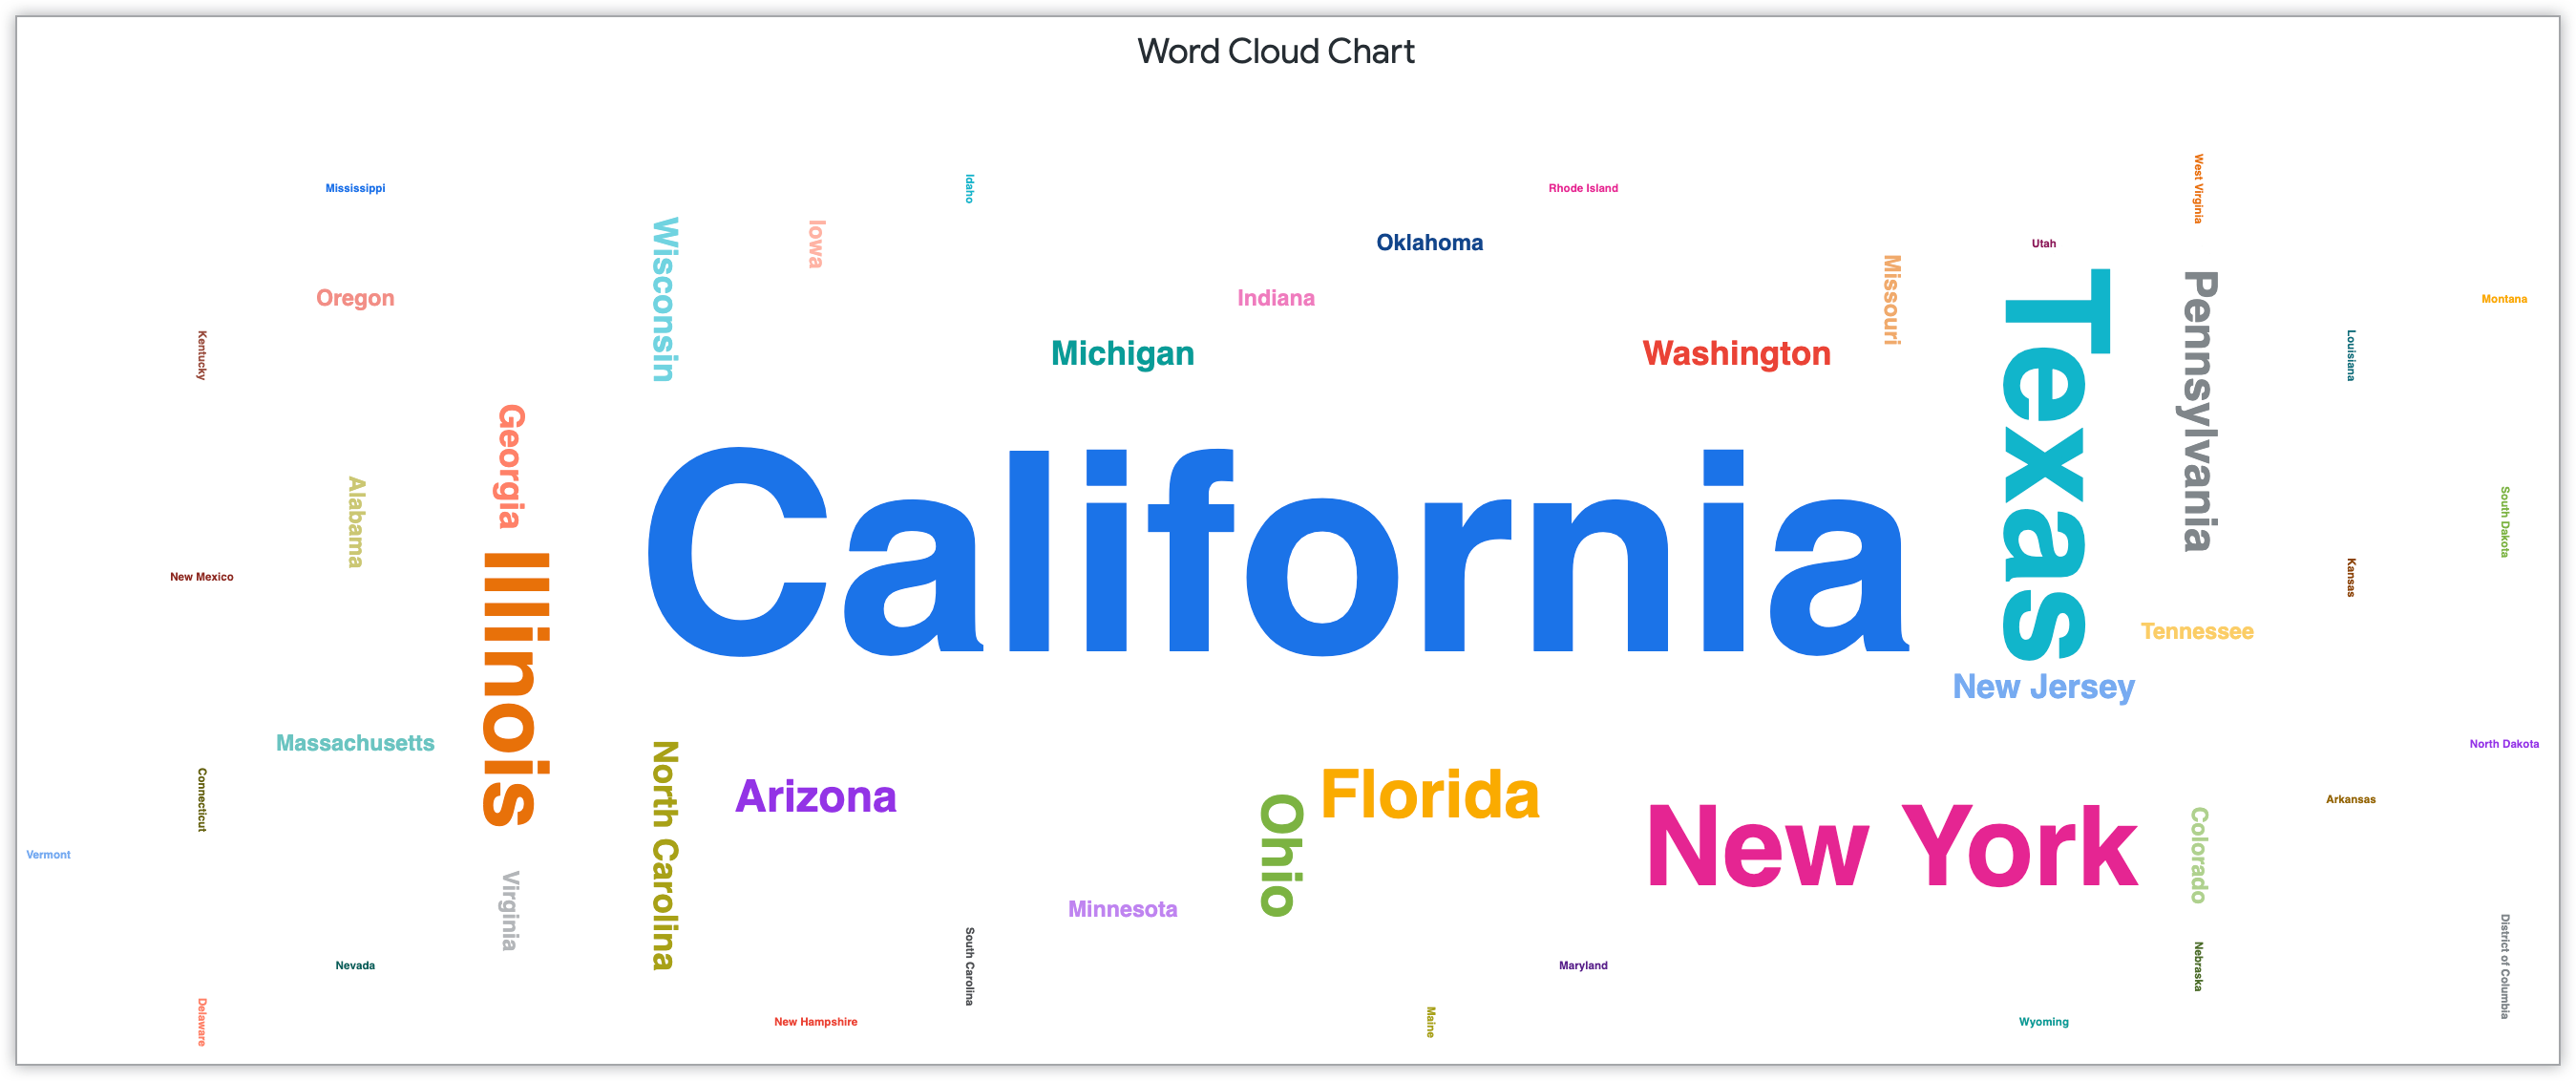 Gráfico de nuvem do Word que mostra nomes de estado dimensionados pelo número de clientes nesse estado.